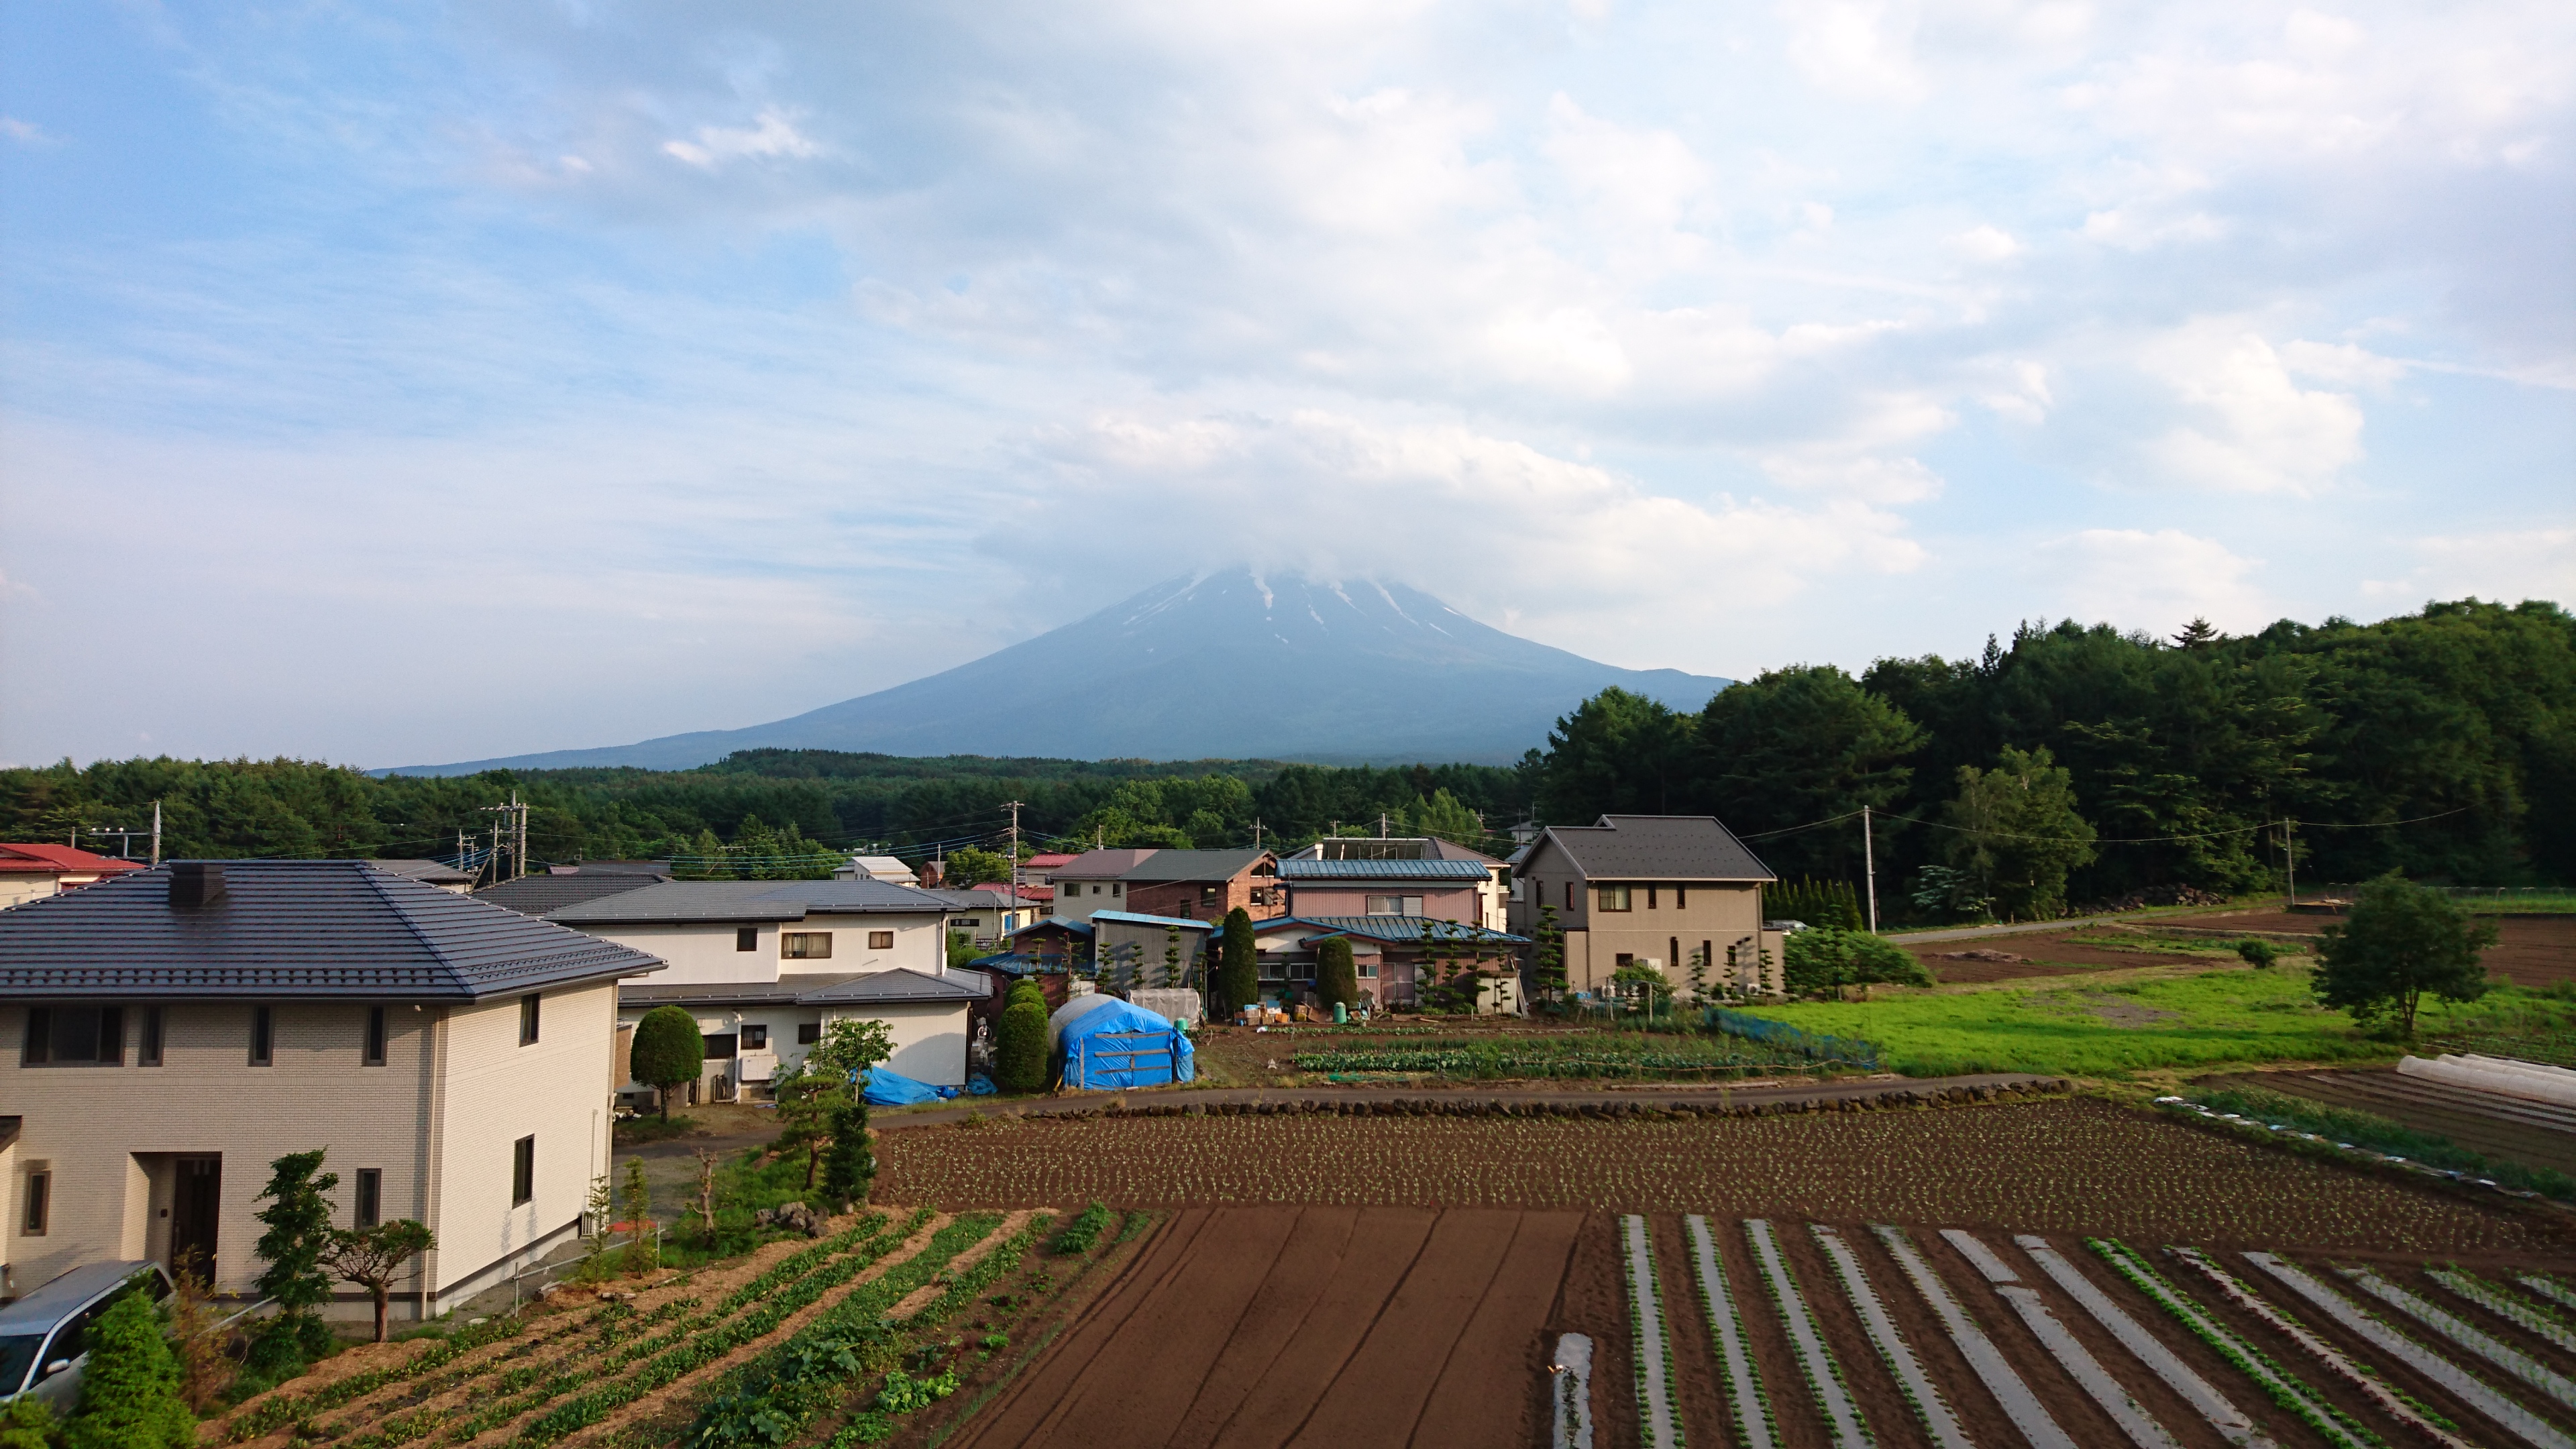 Mt富士ヒルクライム